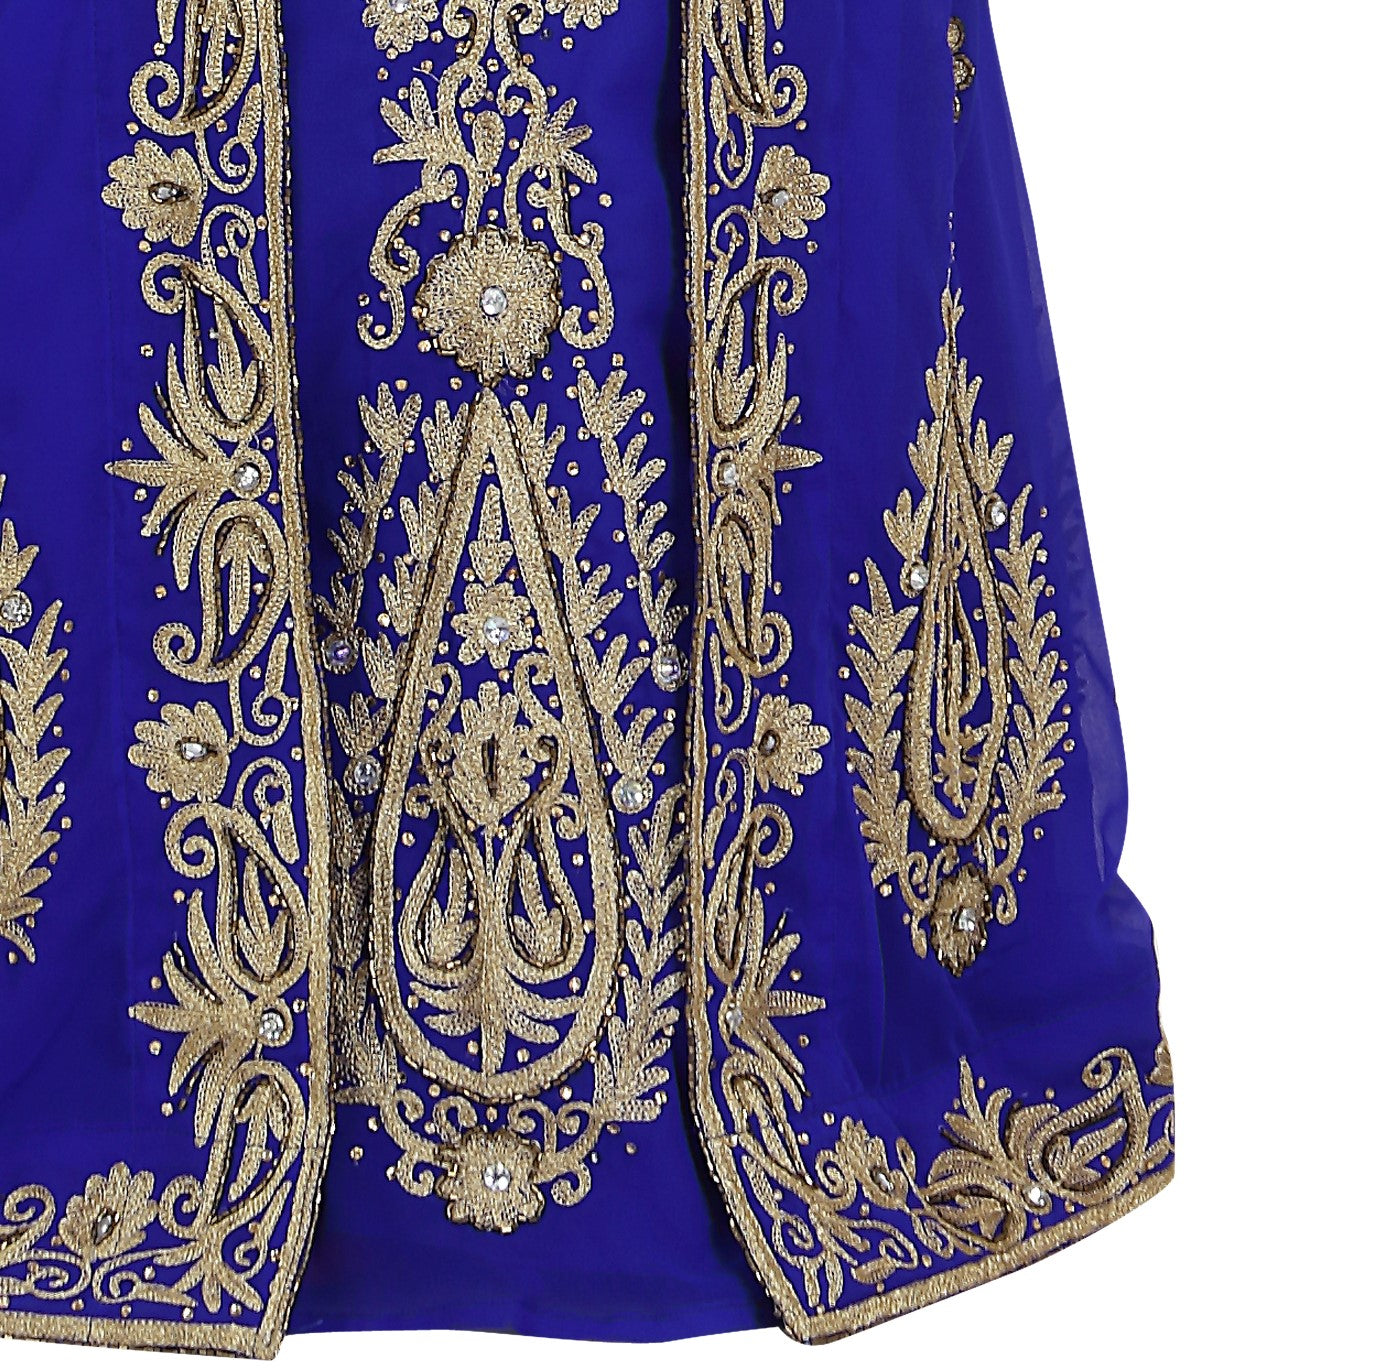 Embroidered Jellabiya Dubai Caftan Dress - Maxim Creation